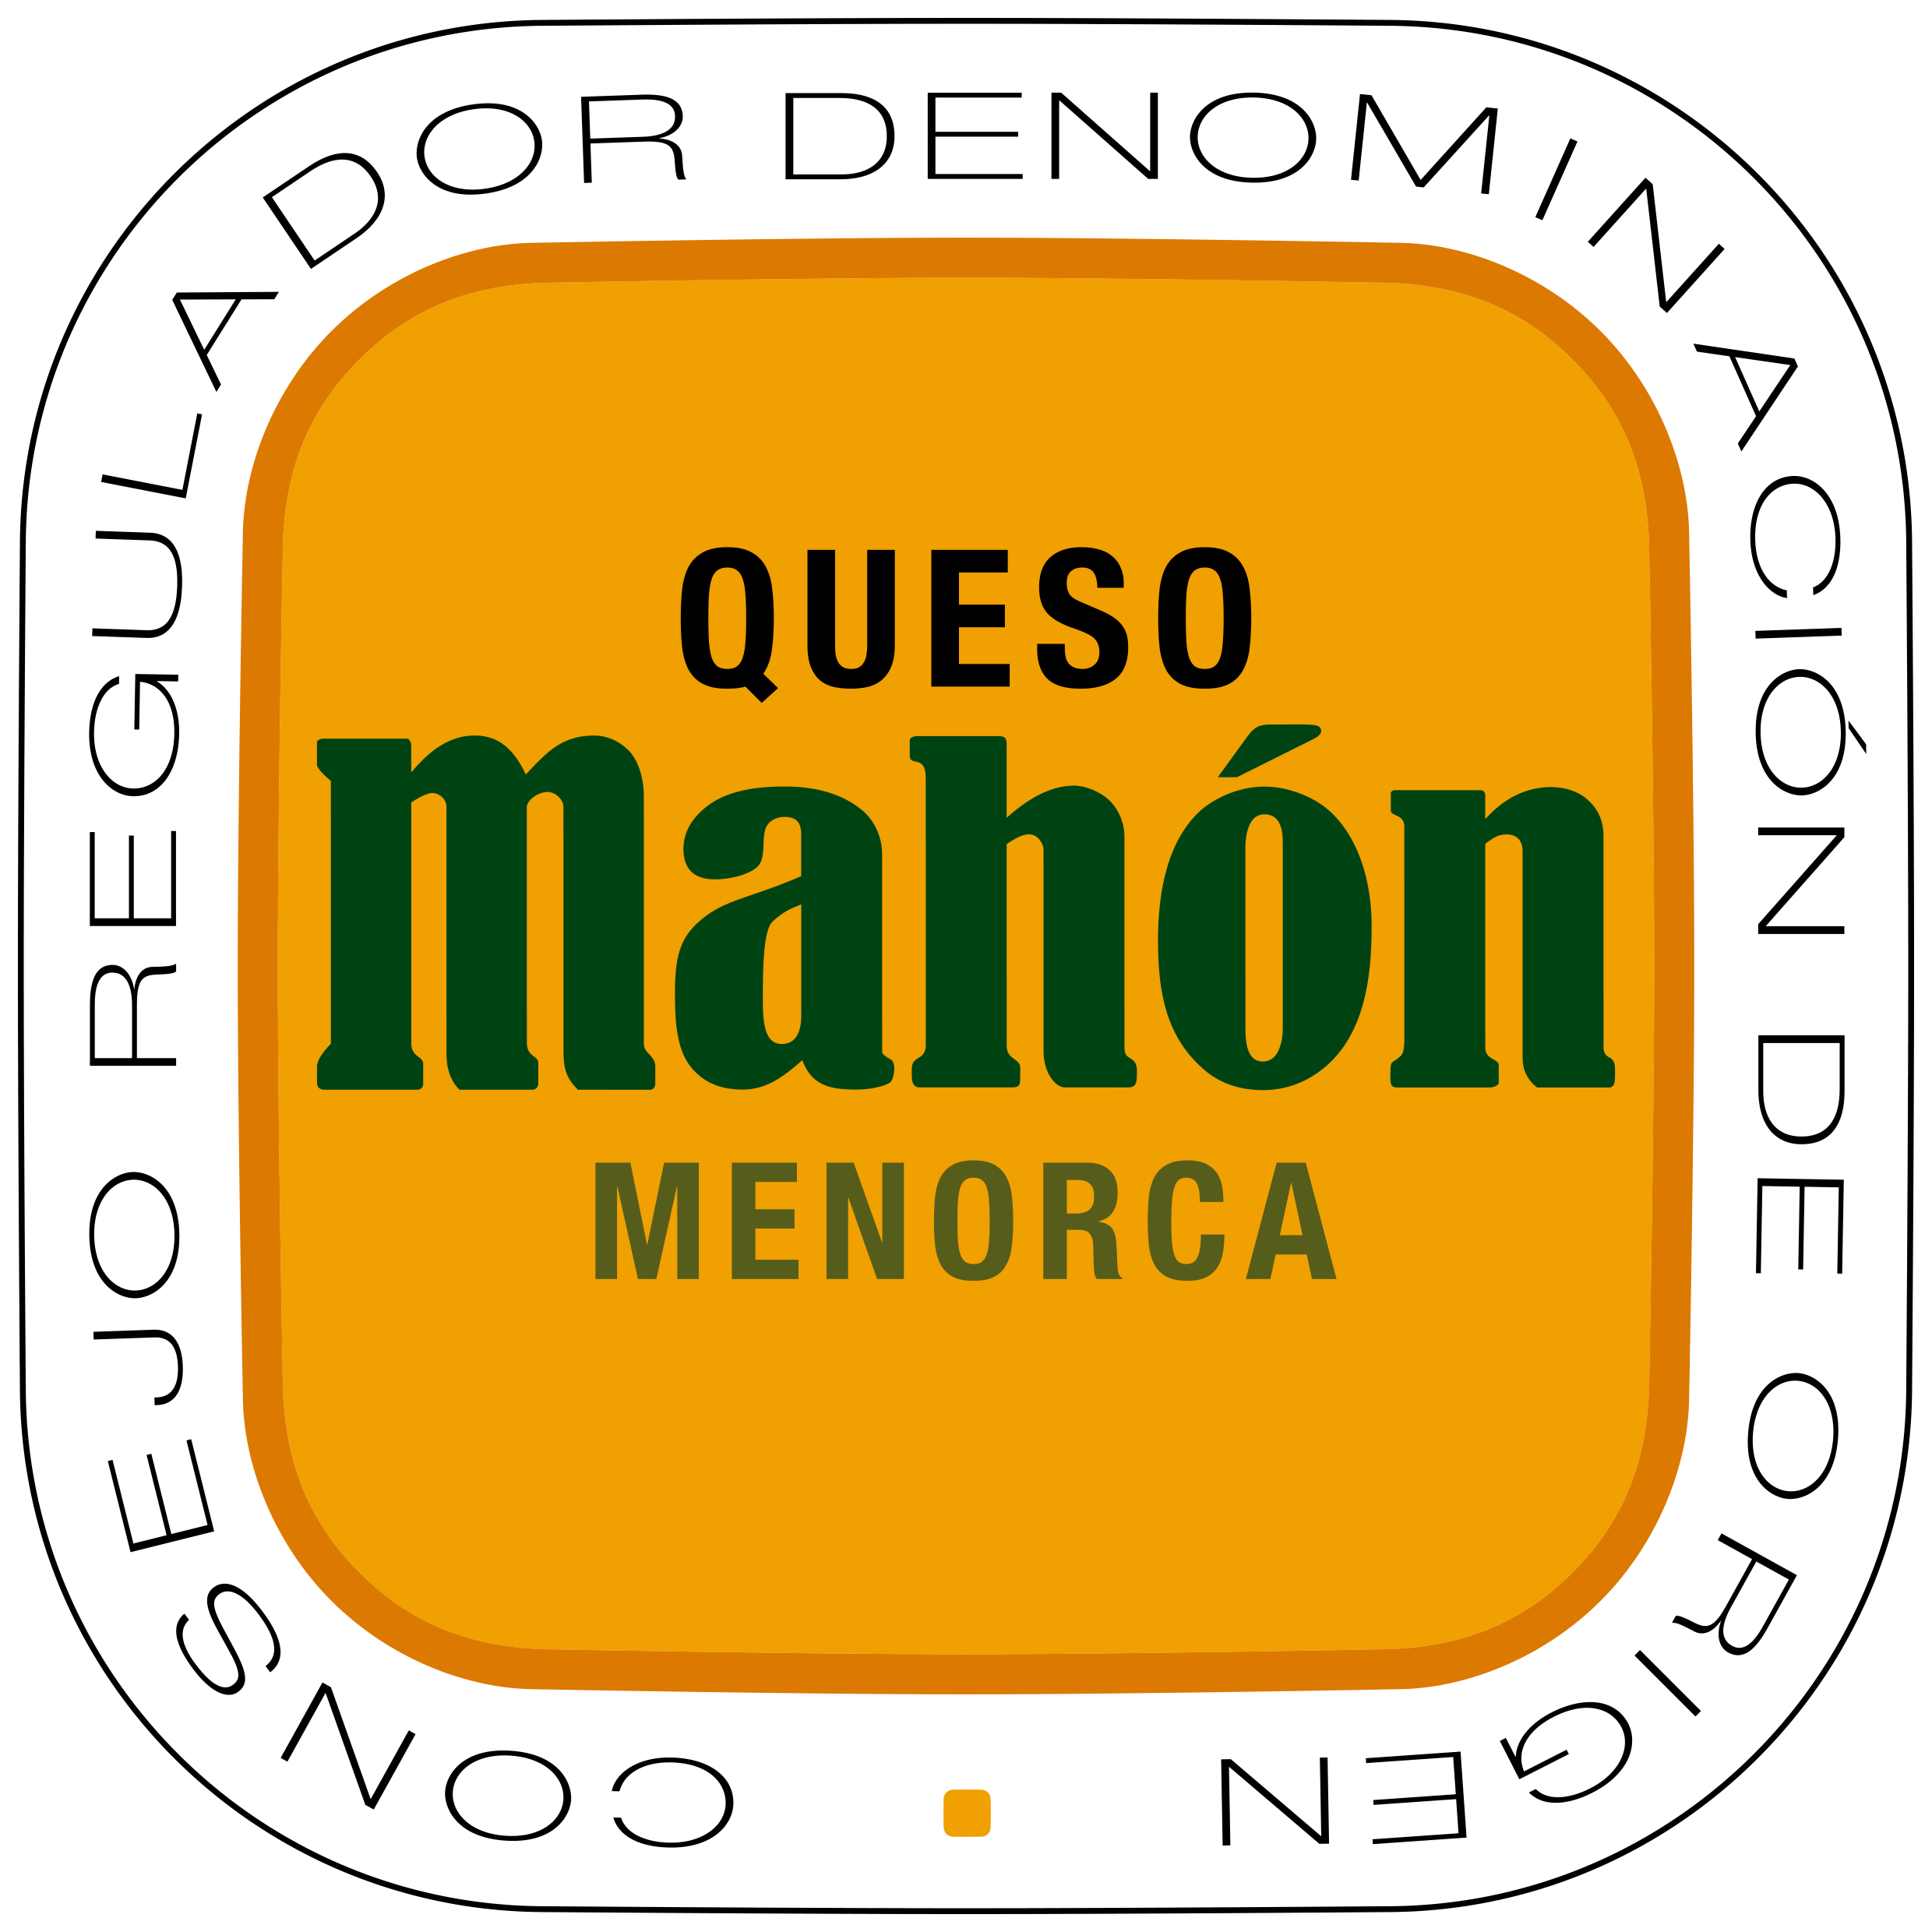 El 44% de les persones de Mallorca coneix la DOP formatge “Mahón-Menorca” - Notícies - Illes Balears - Productes agroalimentaris, denominacions d'origen i gastronomia balear